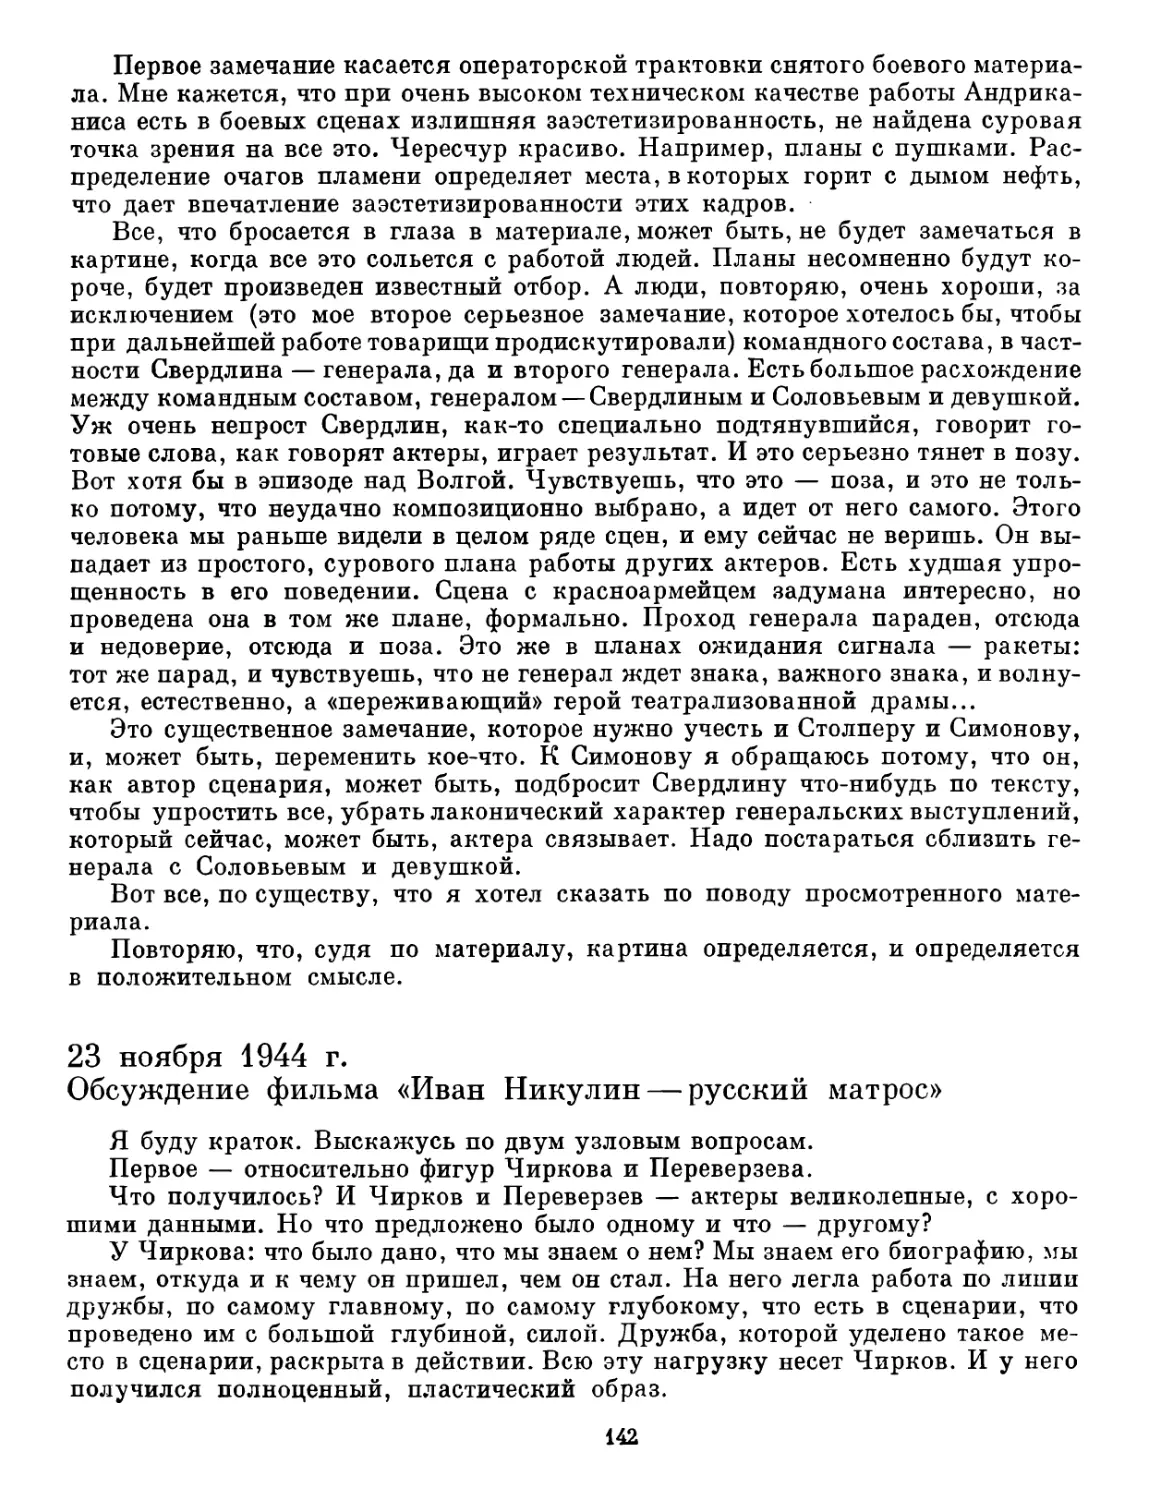 23 ноября 1944 г. Обсуждение фильма «Иван Никулин — русский матрос»